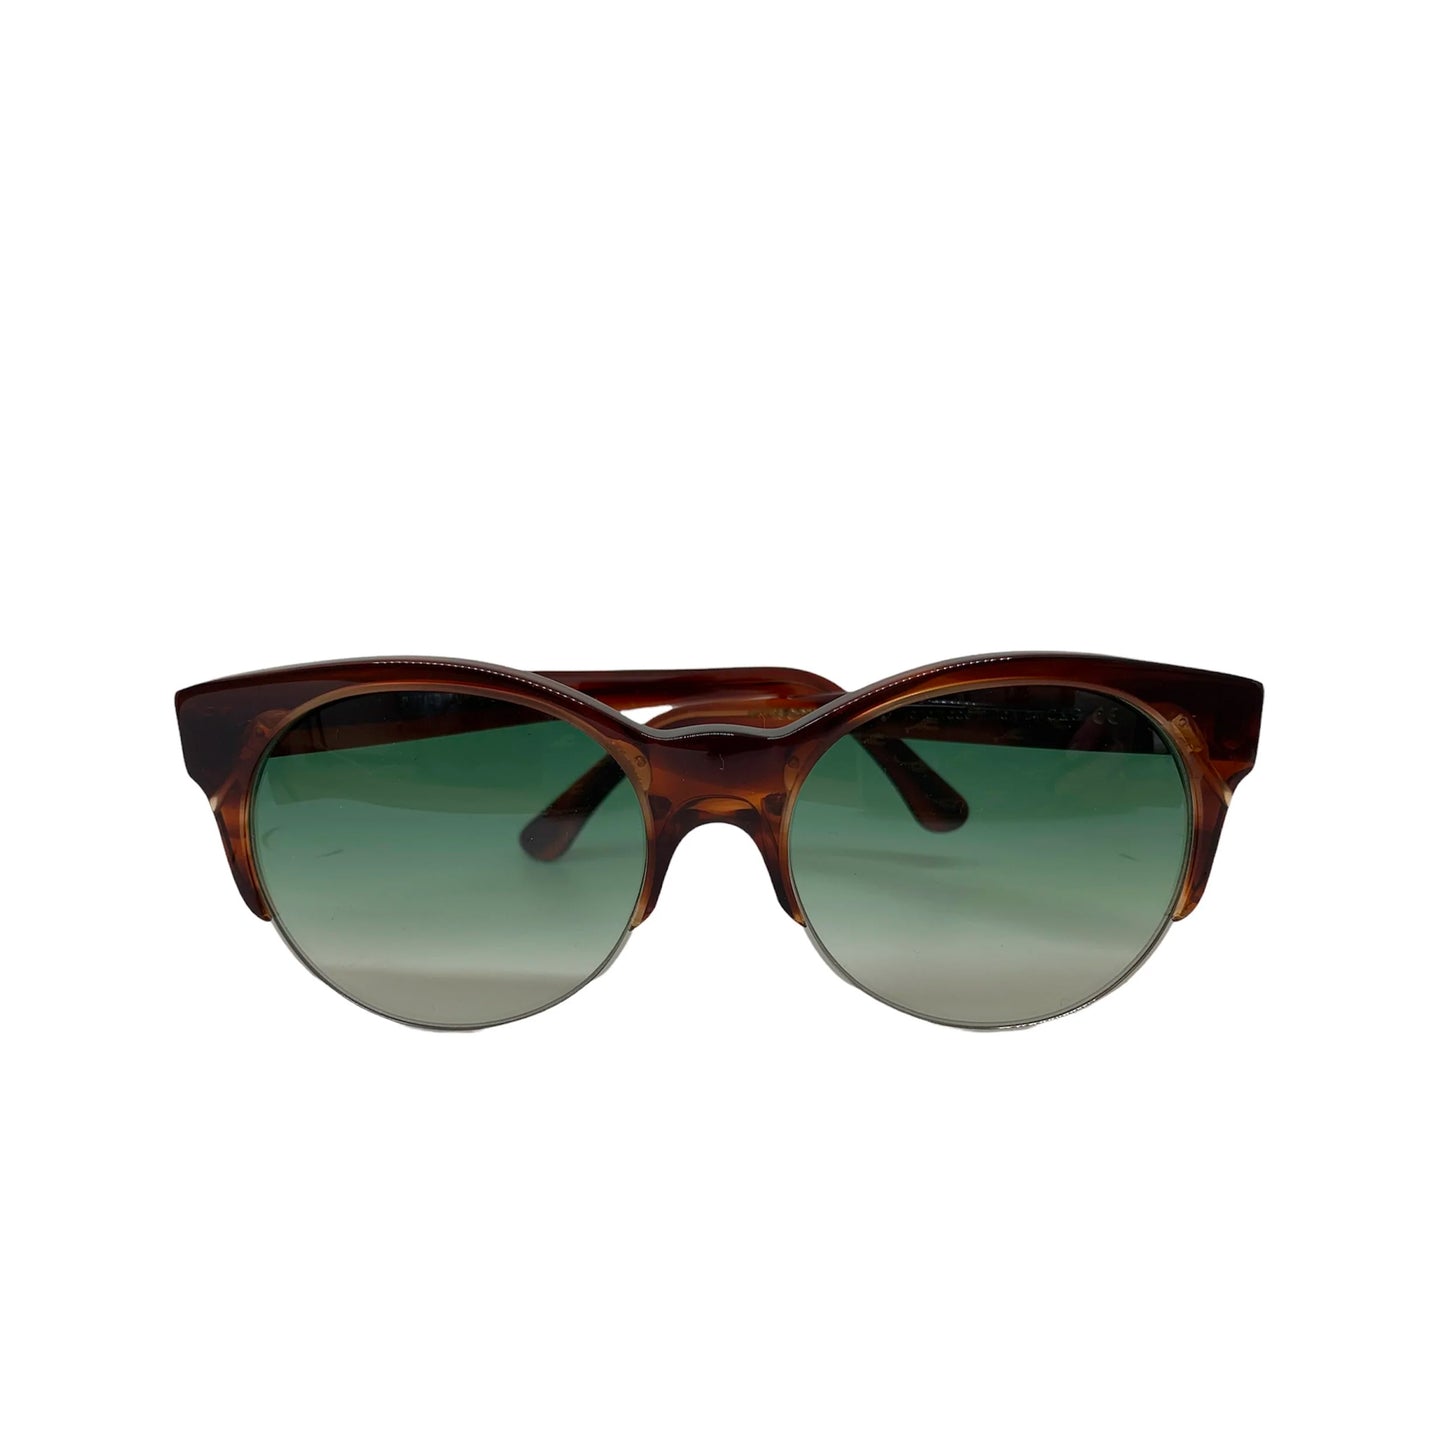 Cutler & Gross Tortoise Shell Sunglasses